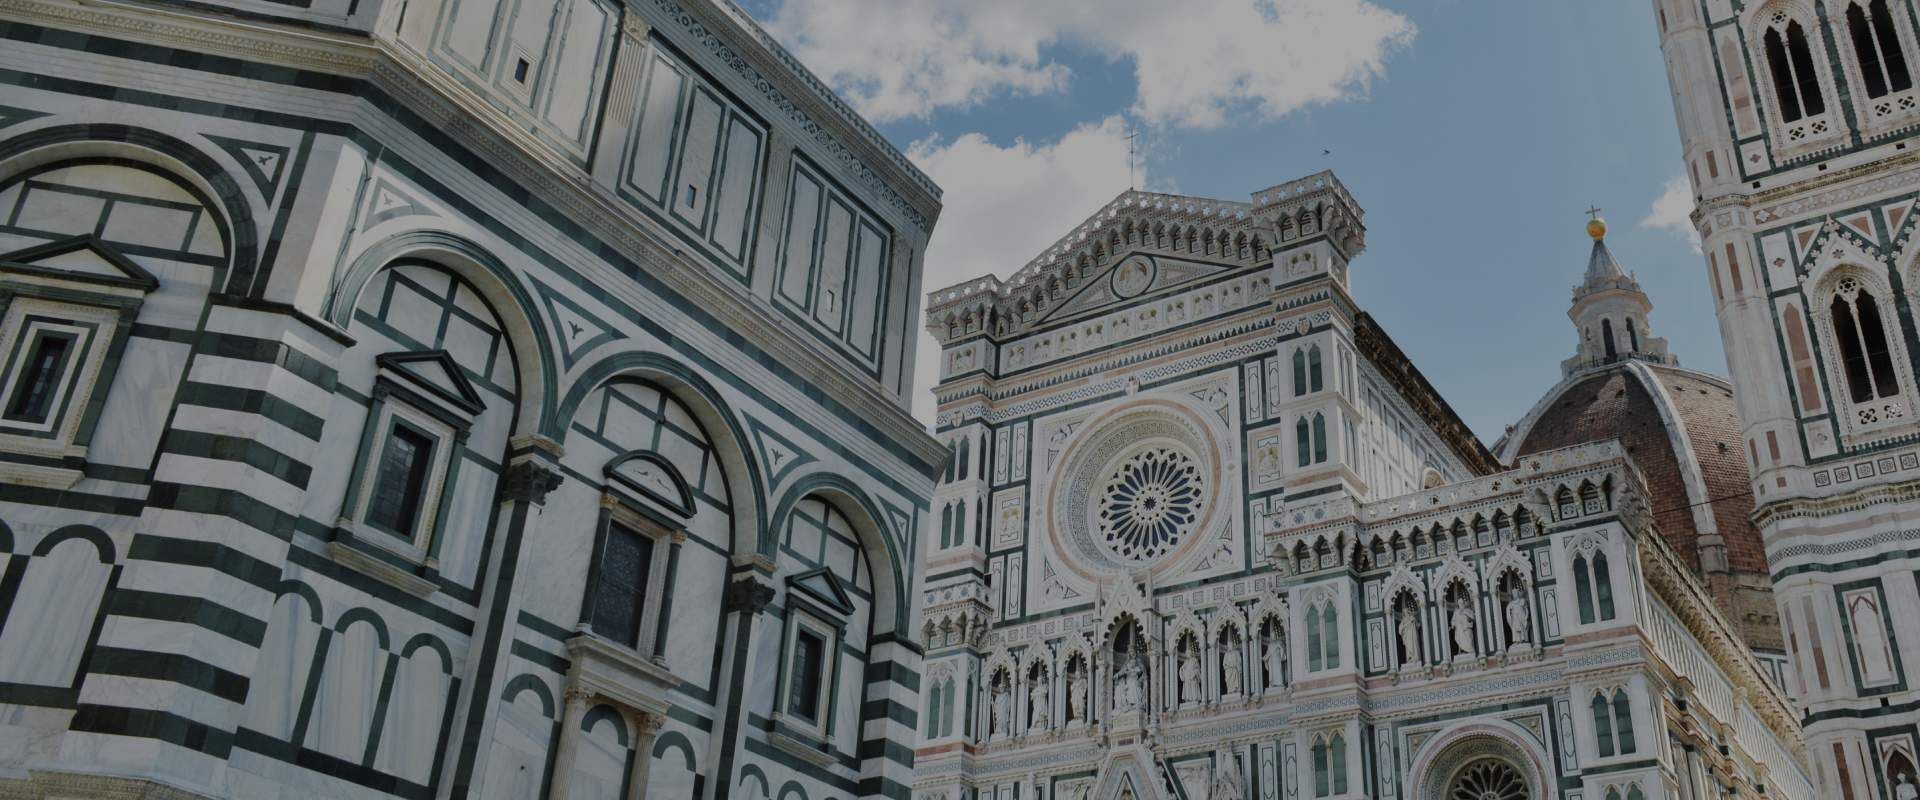 Duomo Di Firenze Secured By Dom